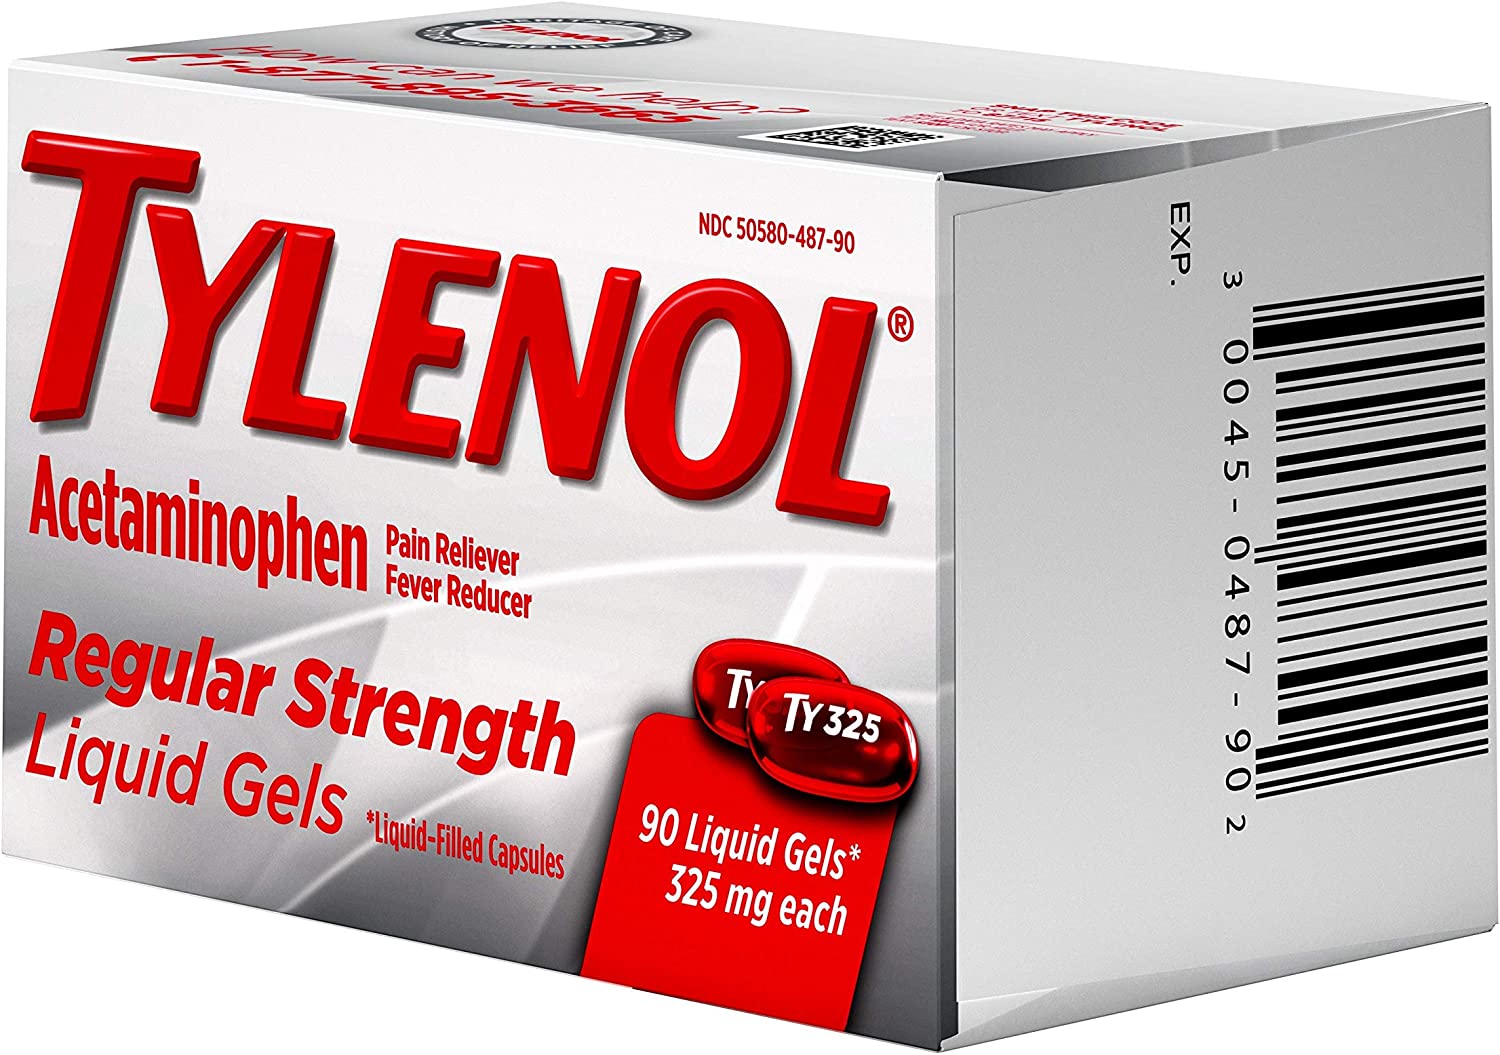 Tylenol Regular Strength Liquid Gels - 90 Tablet-2